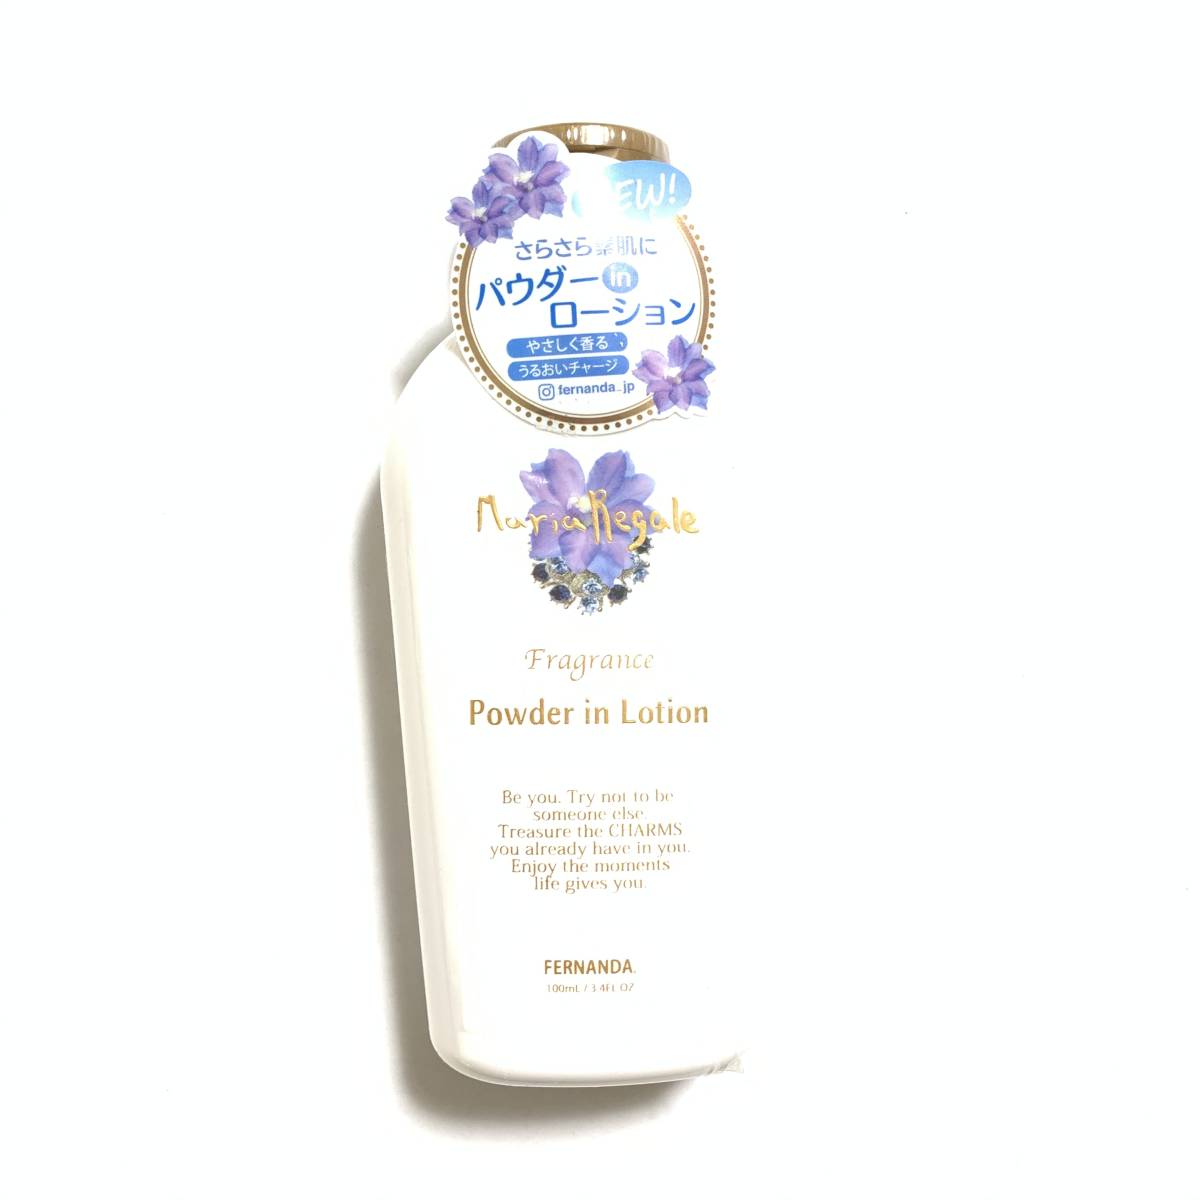  new goods limitation *FERNANDA (feru naan da) fragrance powder in lotion Mali have gel ( body lotion )*